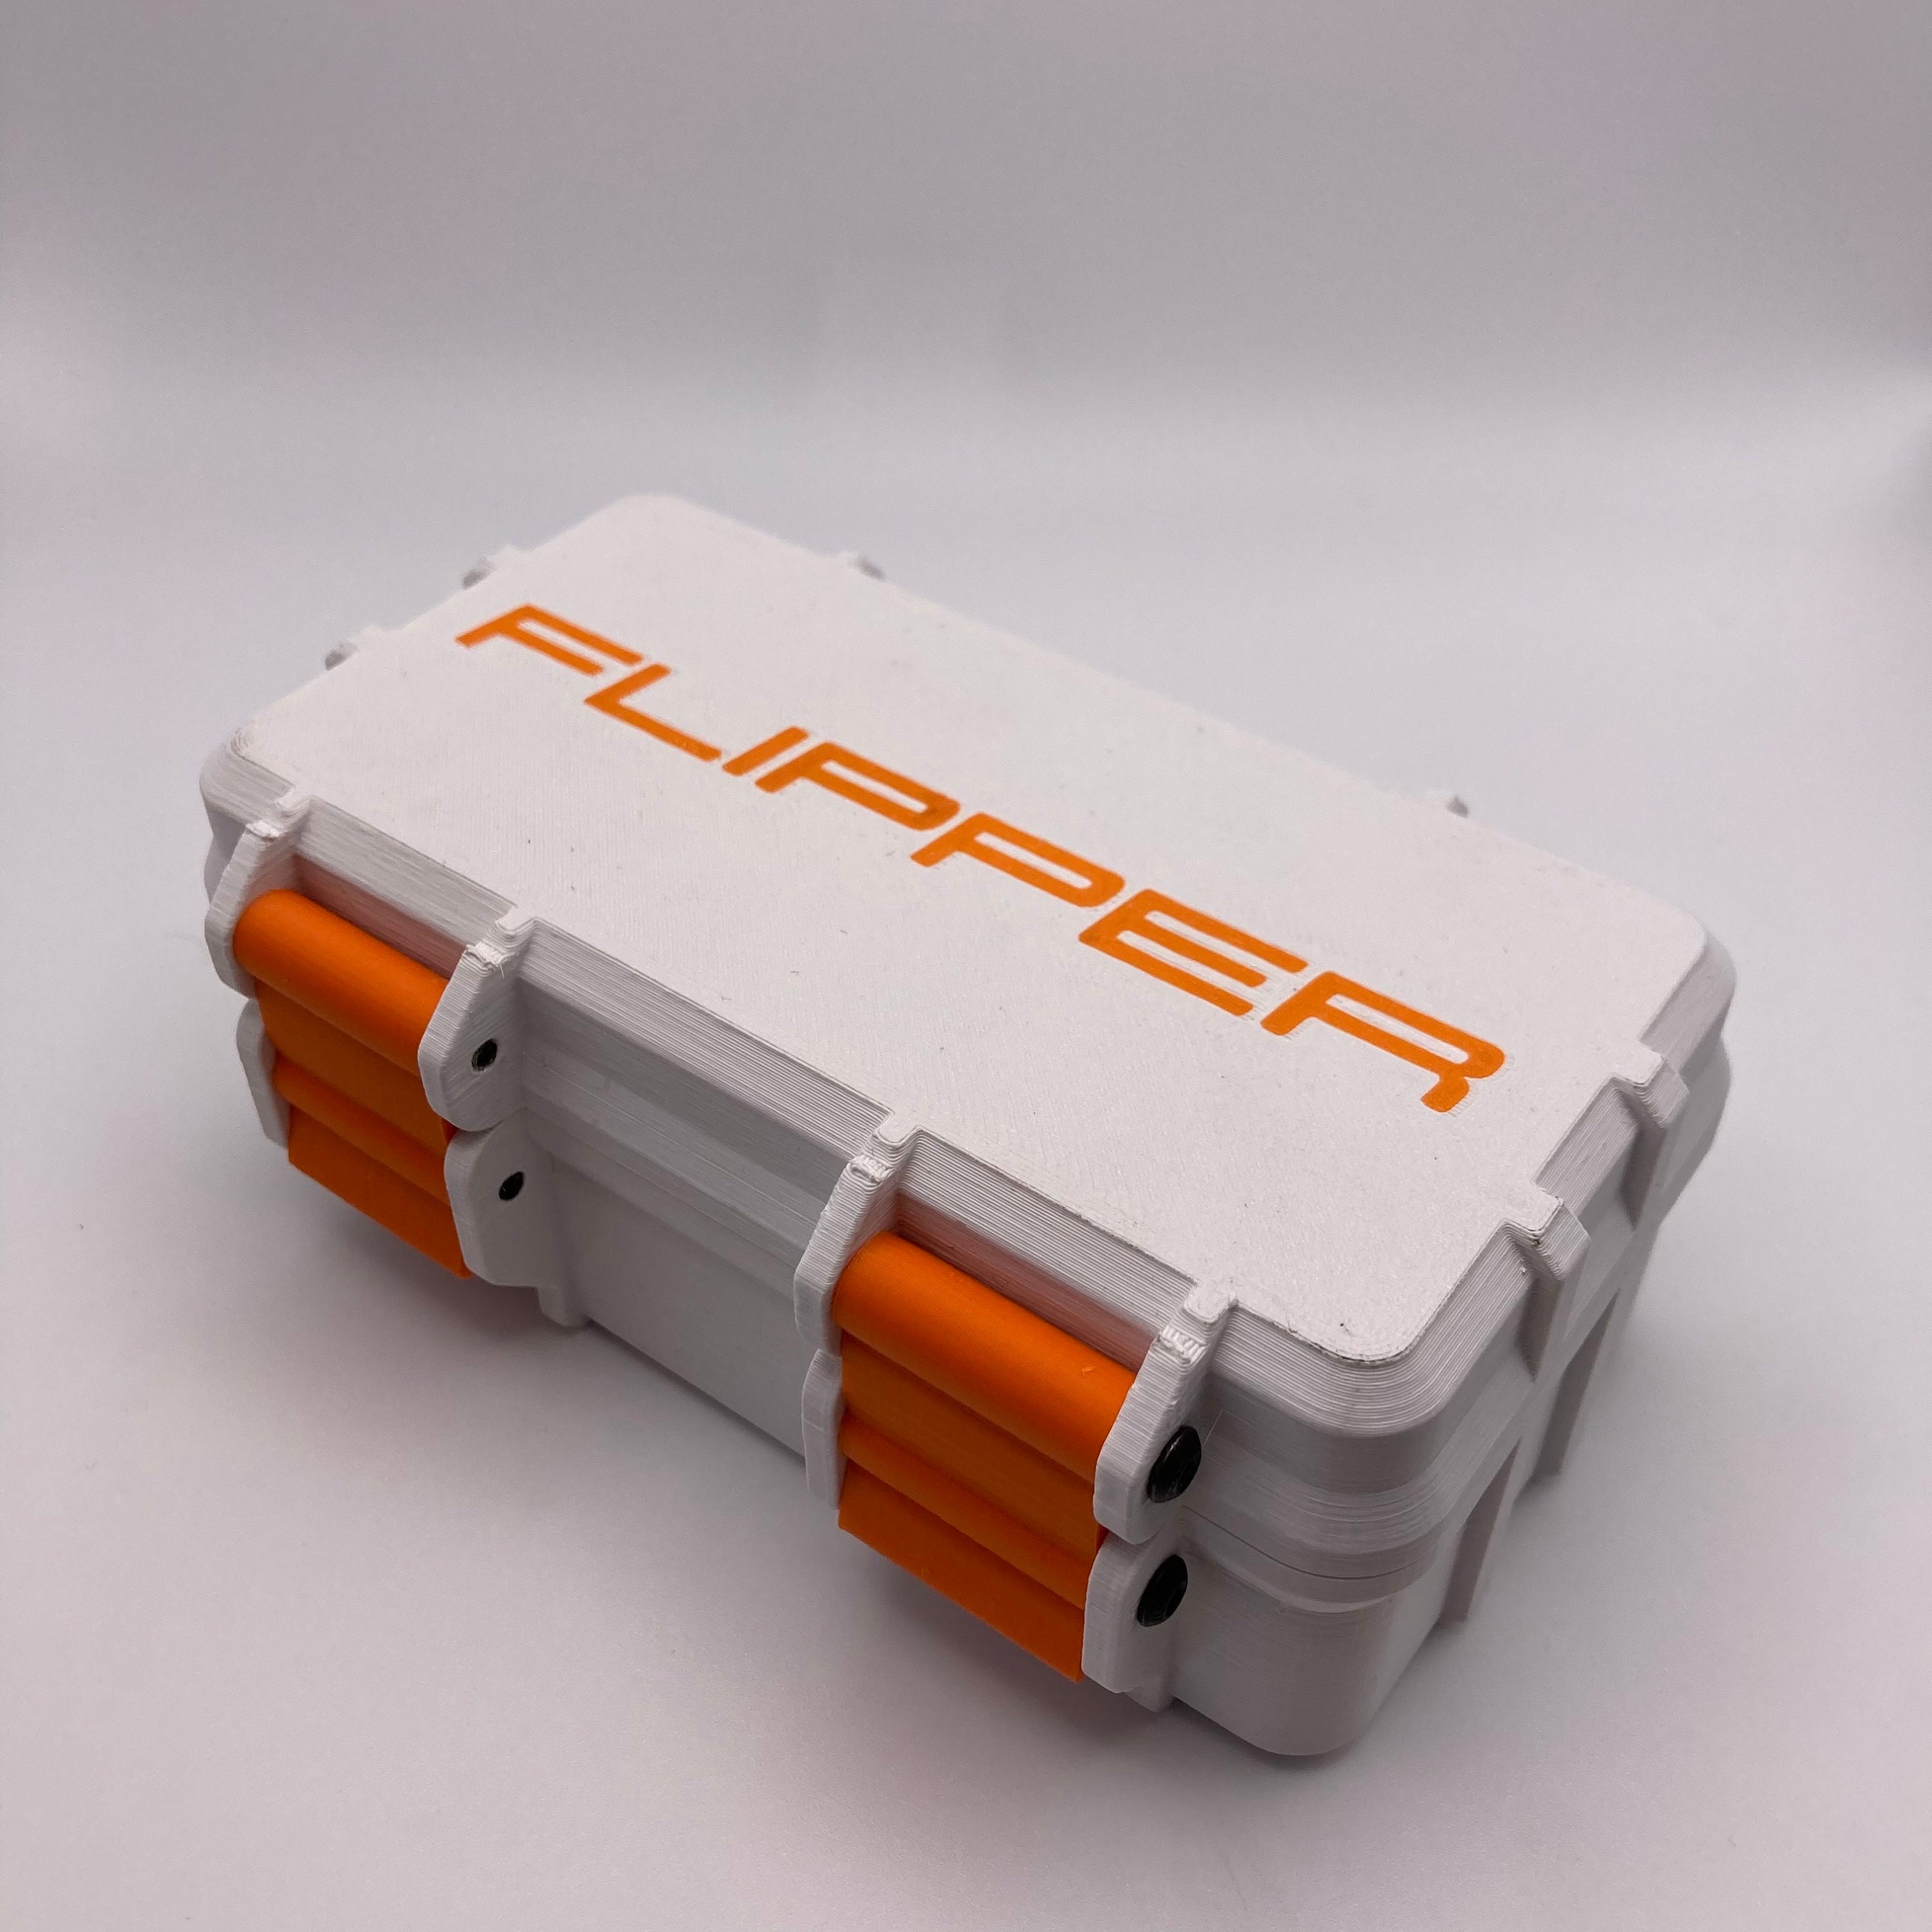 Flipper Zero Case Rugged Storage Box 